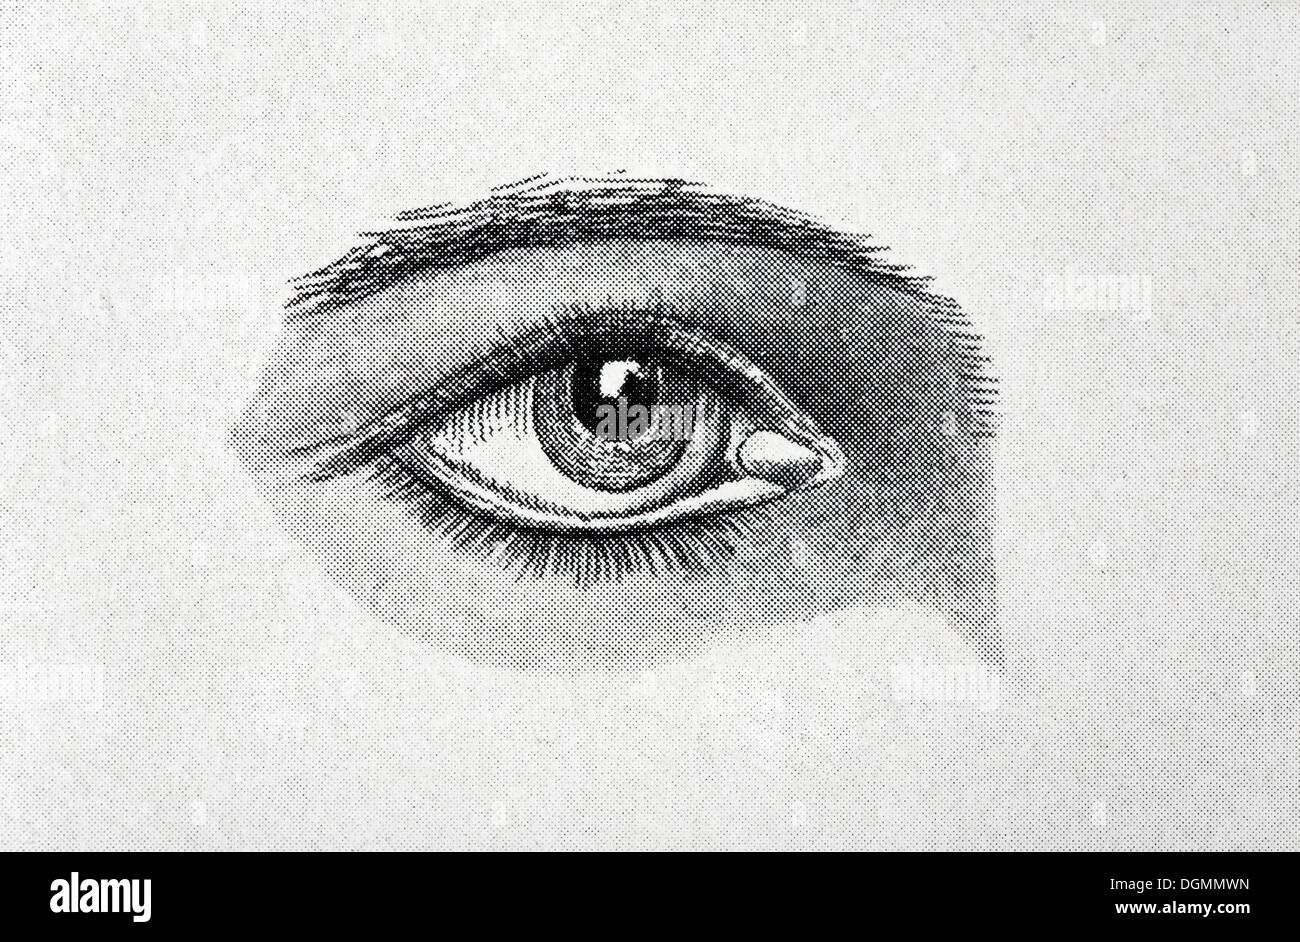 Occhio umano, schermatura immagine a mezze tinte, visibile a griglia quadrata, illustrazione da la Brockhaus Konversationslexikon Foto Stock